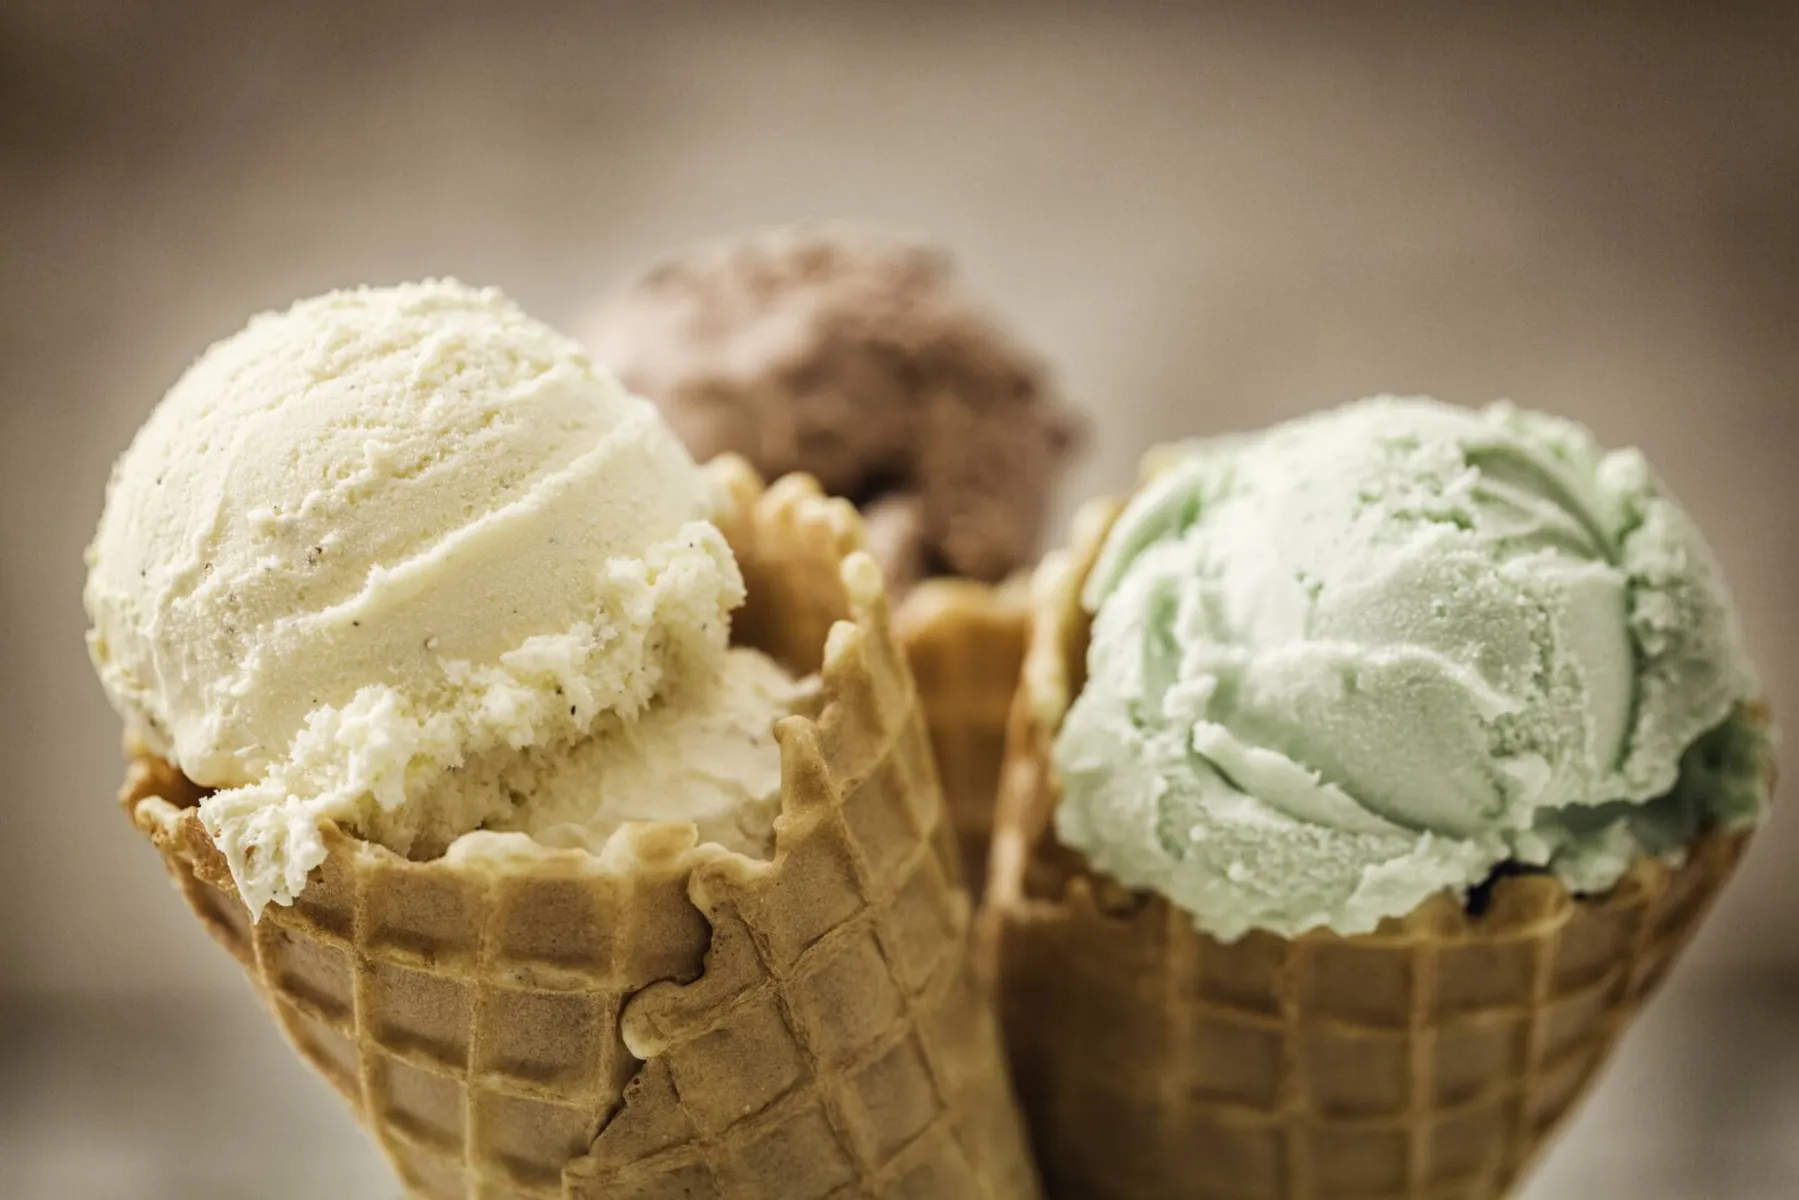 Coloridos e deliciosos, os sorvetes são um bom alimento nos dias quentes